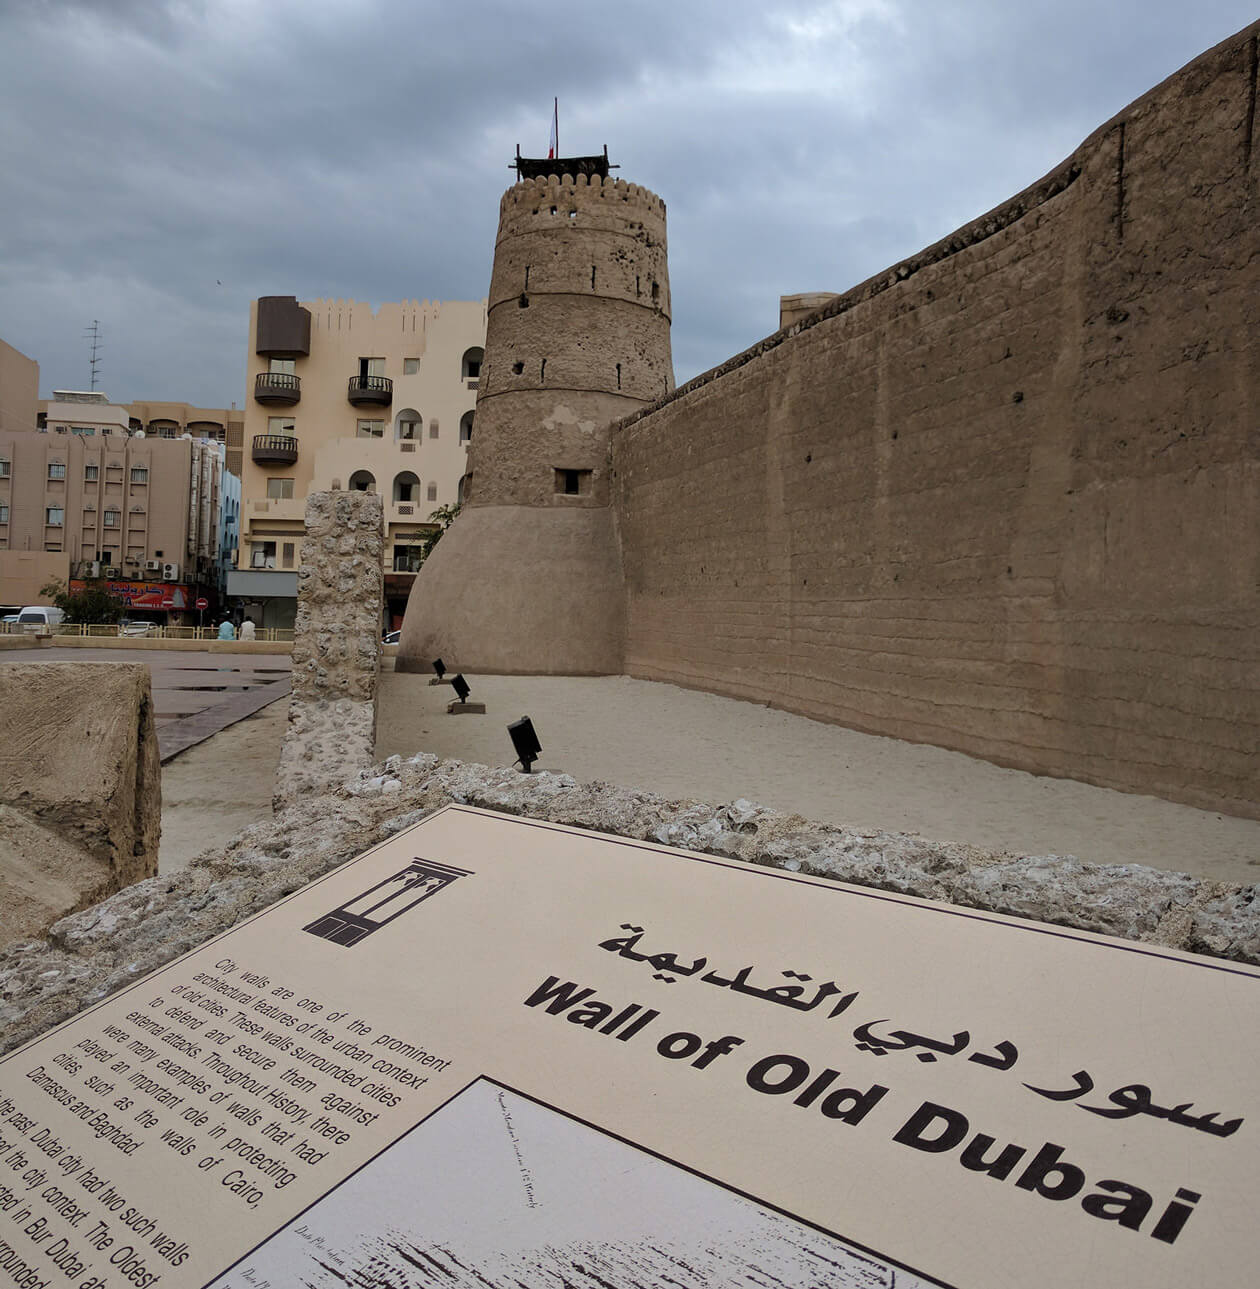 The remains of the Dubai Wall outside the Al Fahidi Fort